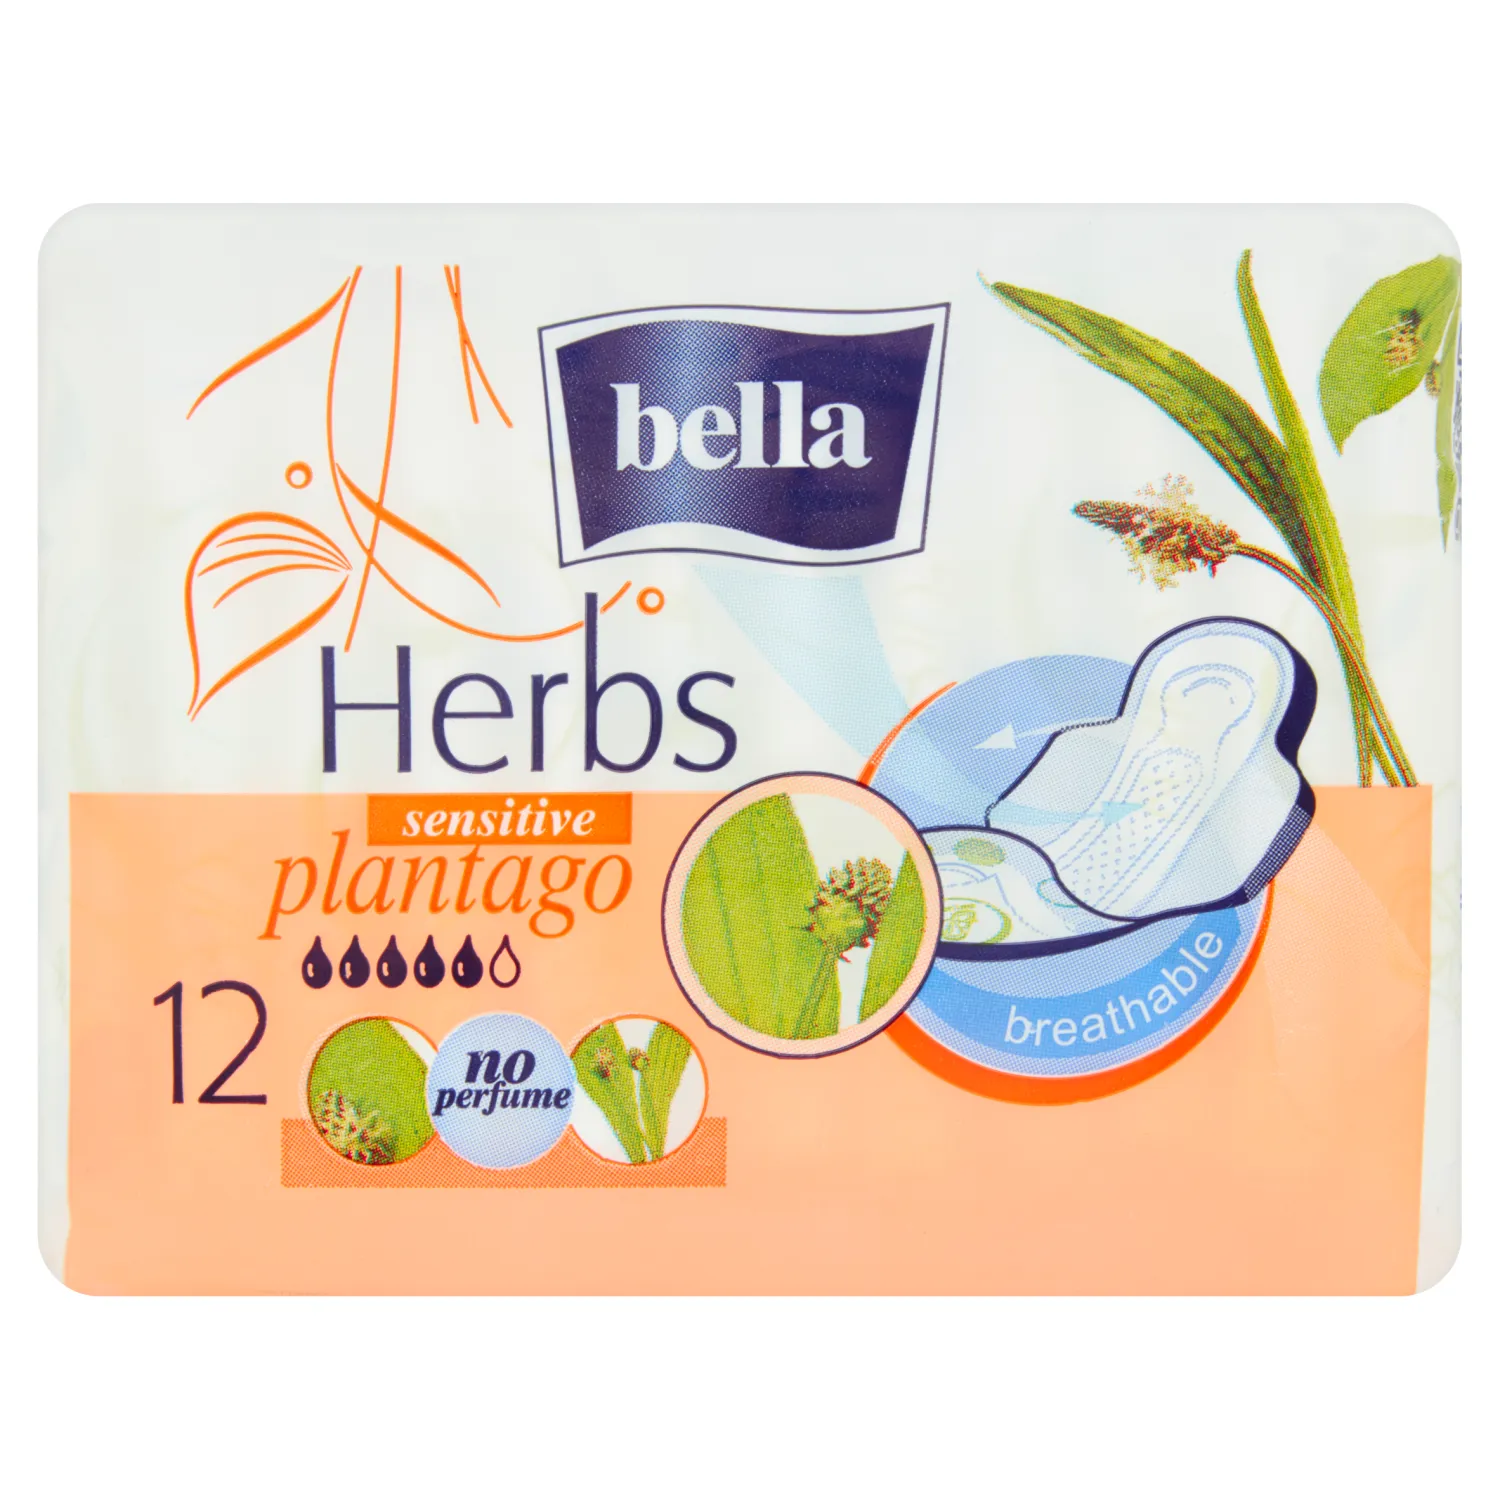 Bella Panty Herbs Sensitive Plantago, Wkładki, 12 sztuk